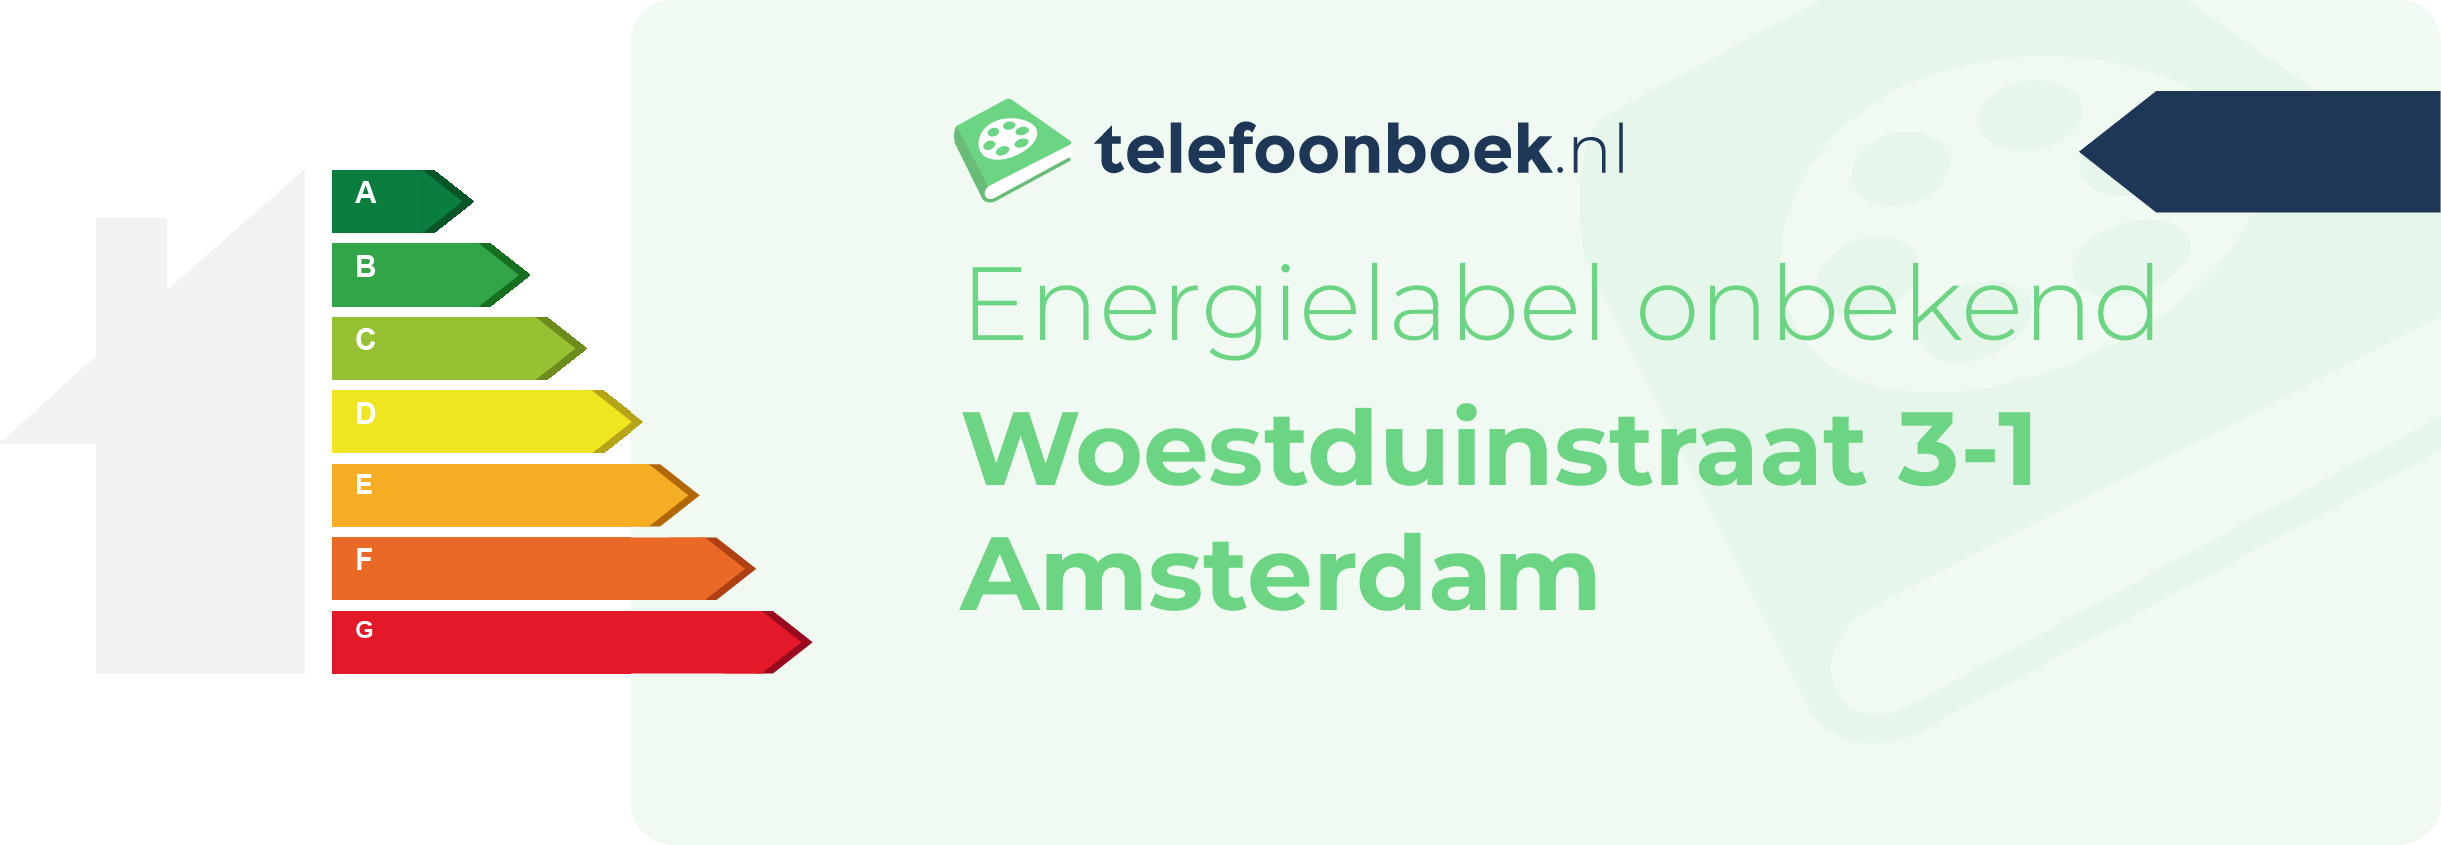 Energielabel Woestduinstraat 3-1 Amsterdam